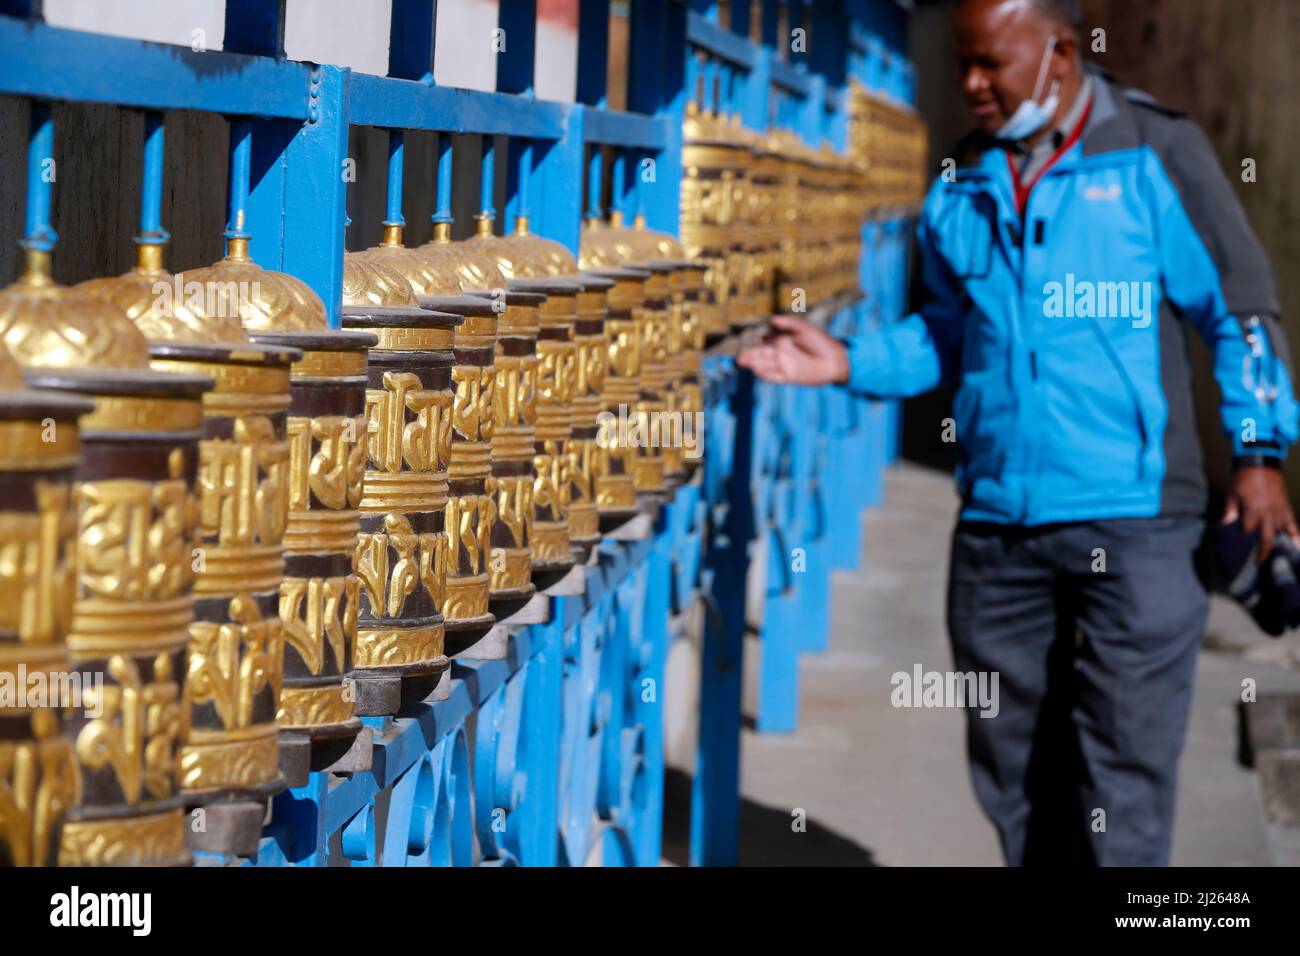 Monastère bouddhiste Shakhya Tharig. Roues de prière en métal roulantes. Un mantra est écrit en langue tibétaine, à l'extérieur de la roue. Banque D'Images